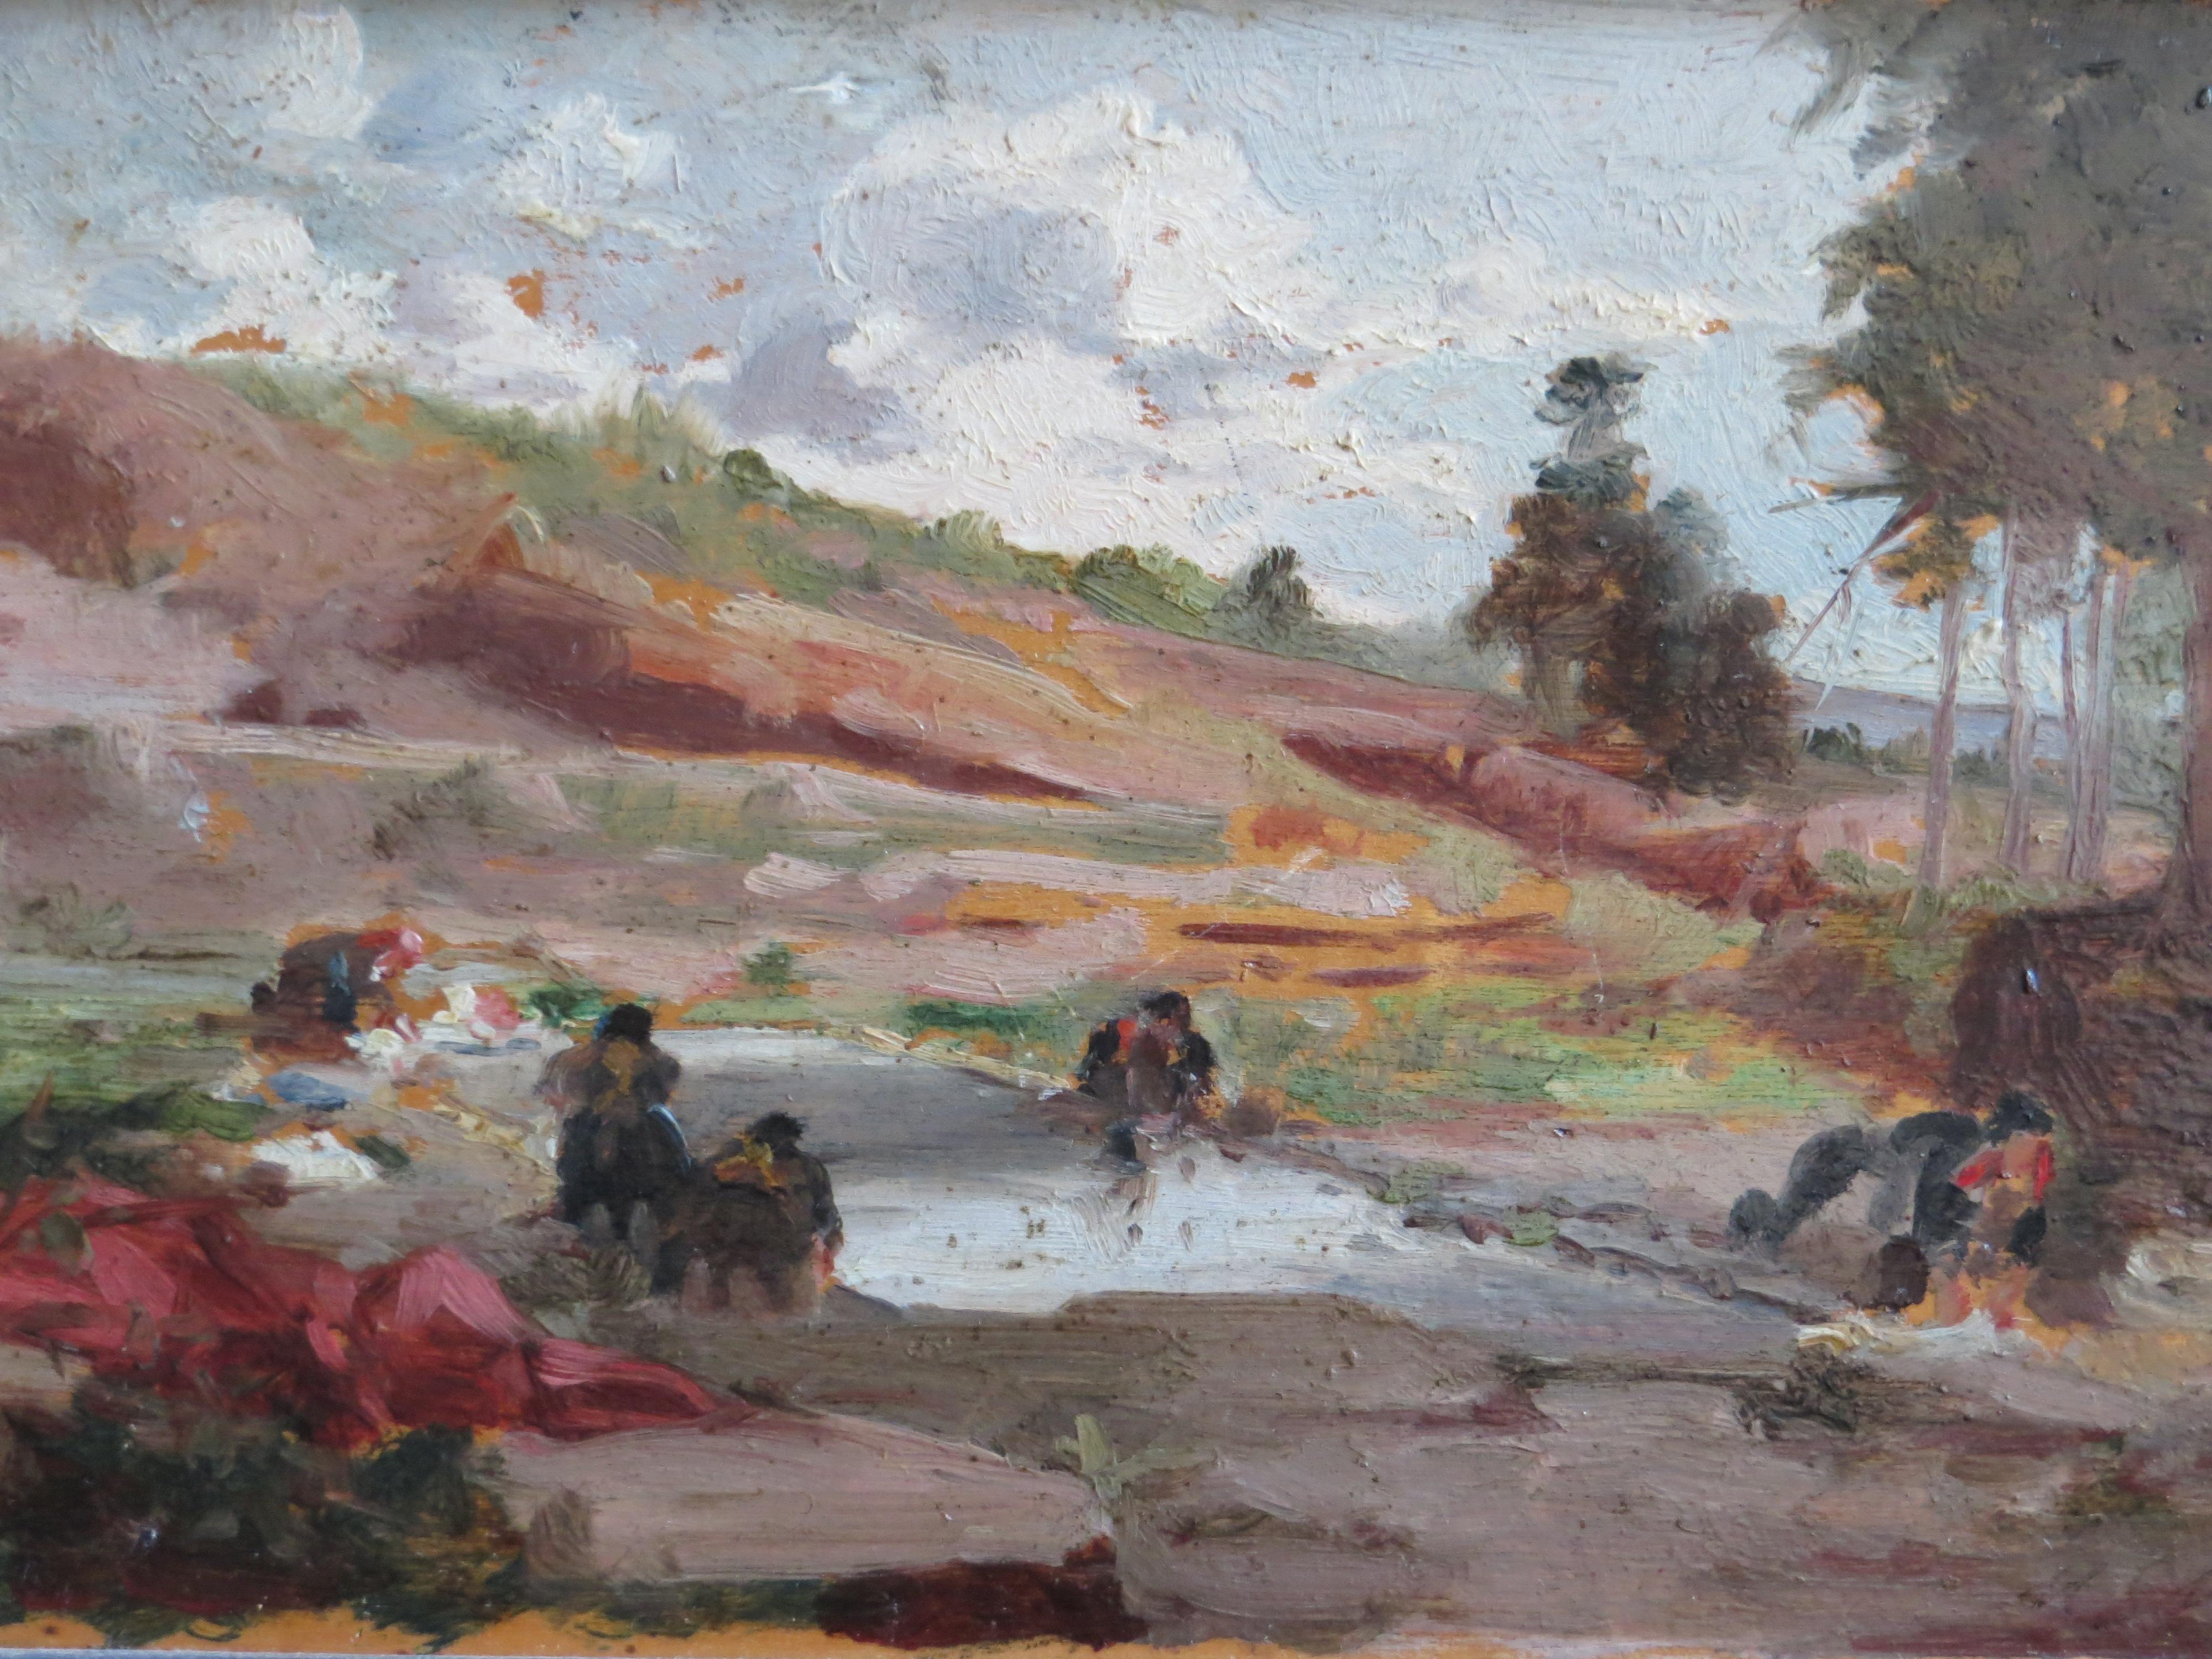 Lavenders am Rande des Flusses  – Painting von Manuel Mendez